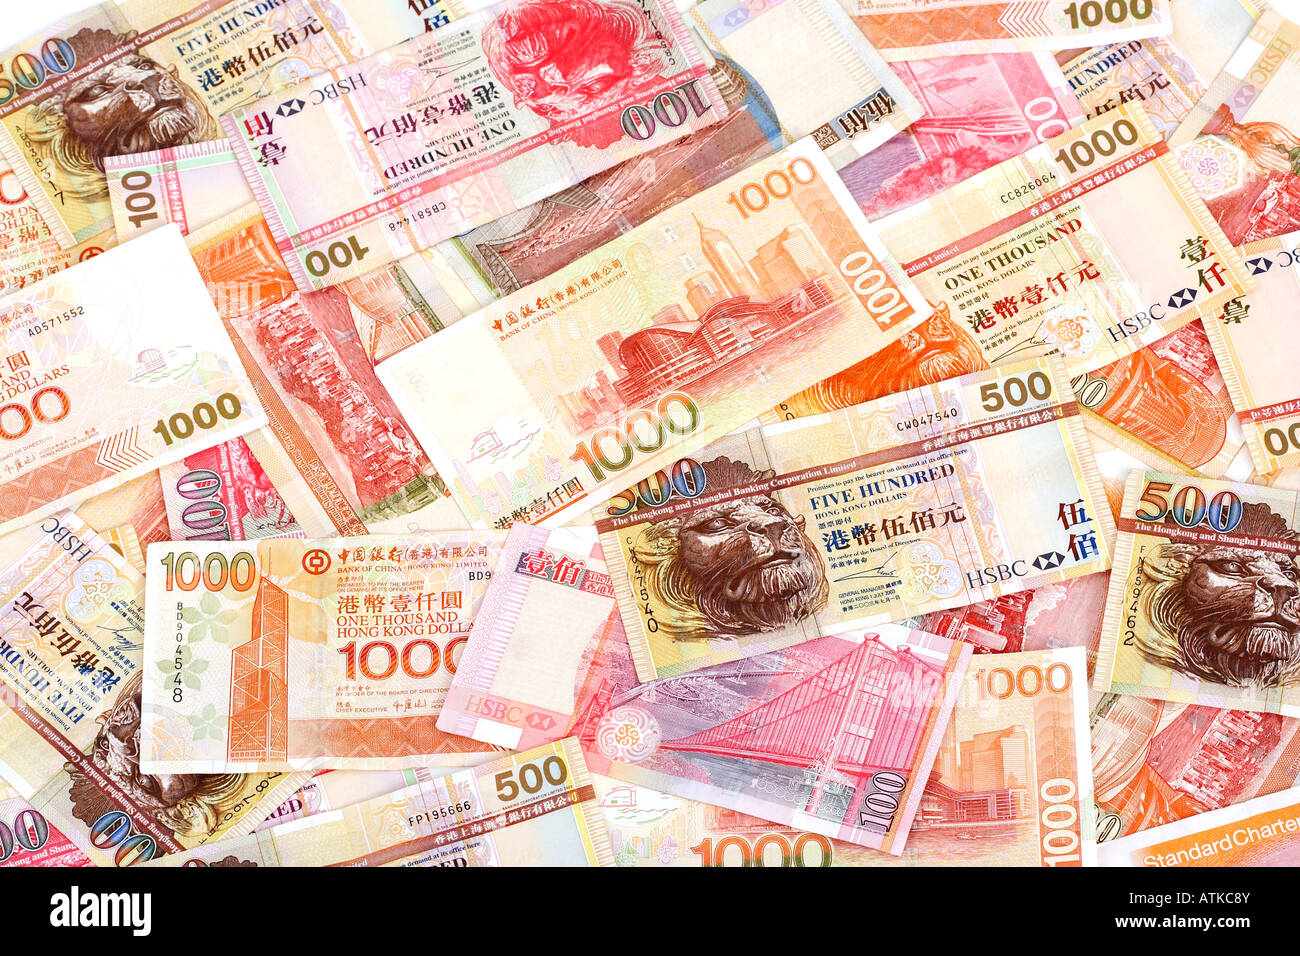 Hong Kong Dolla 1000 500 and 100 bill Stock Photo